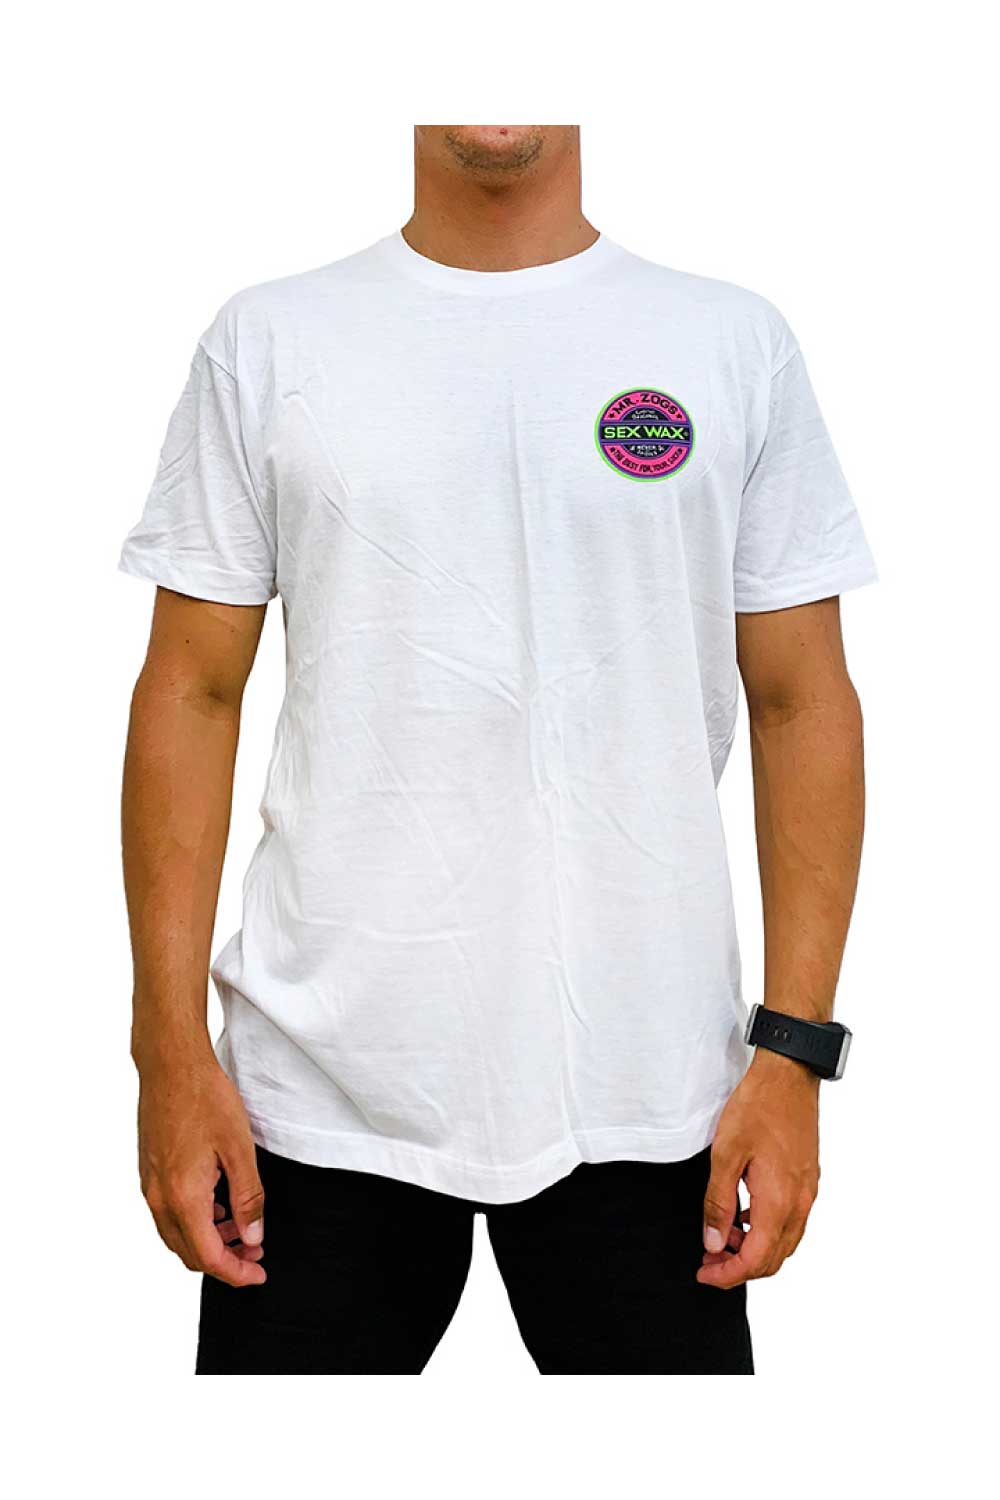 Sex Wax Men's T-Shirt Fluoro Logo